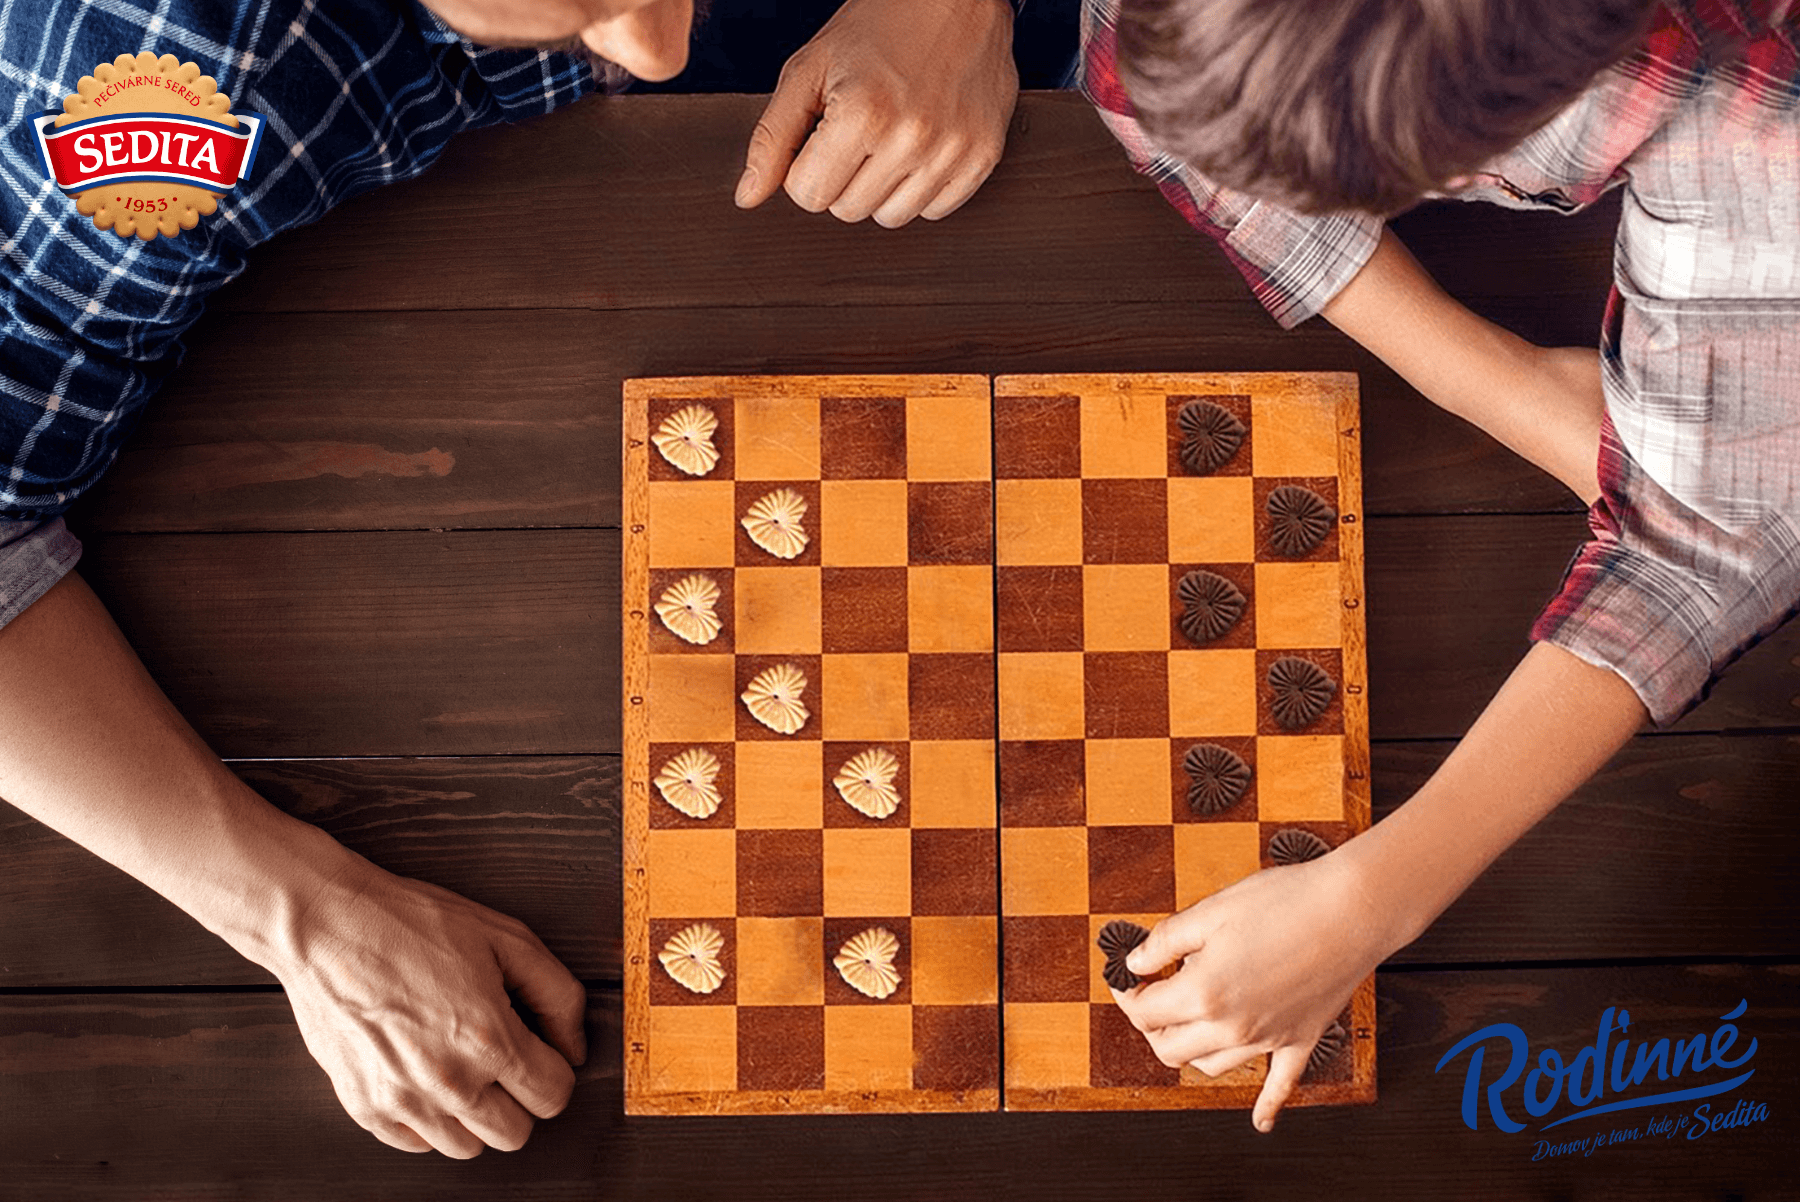 Srdíčka Rodinné šachy